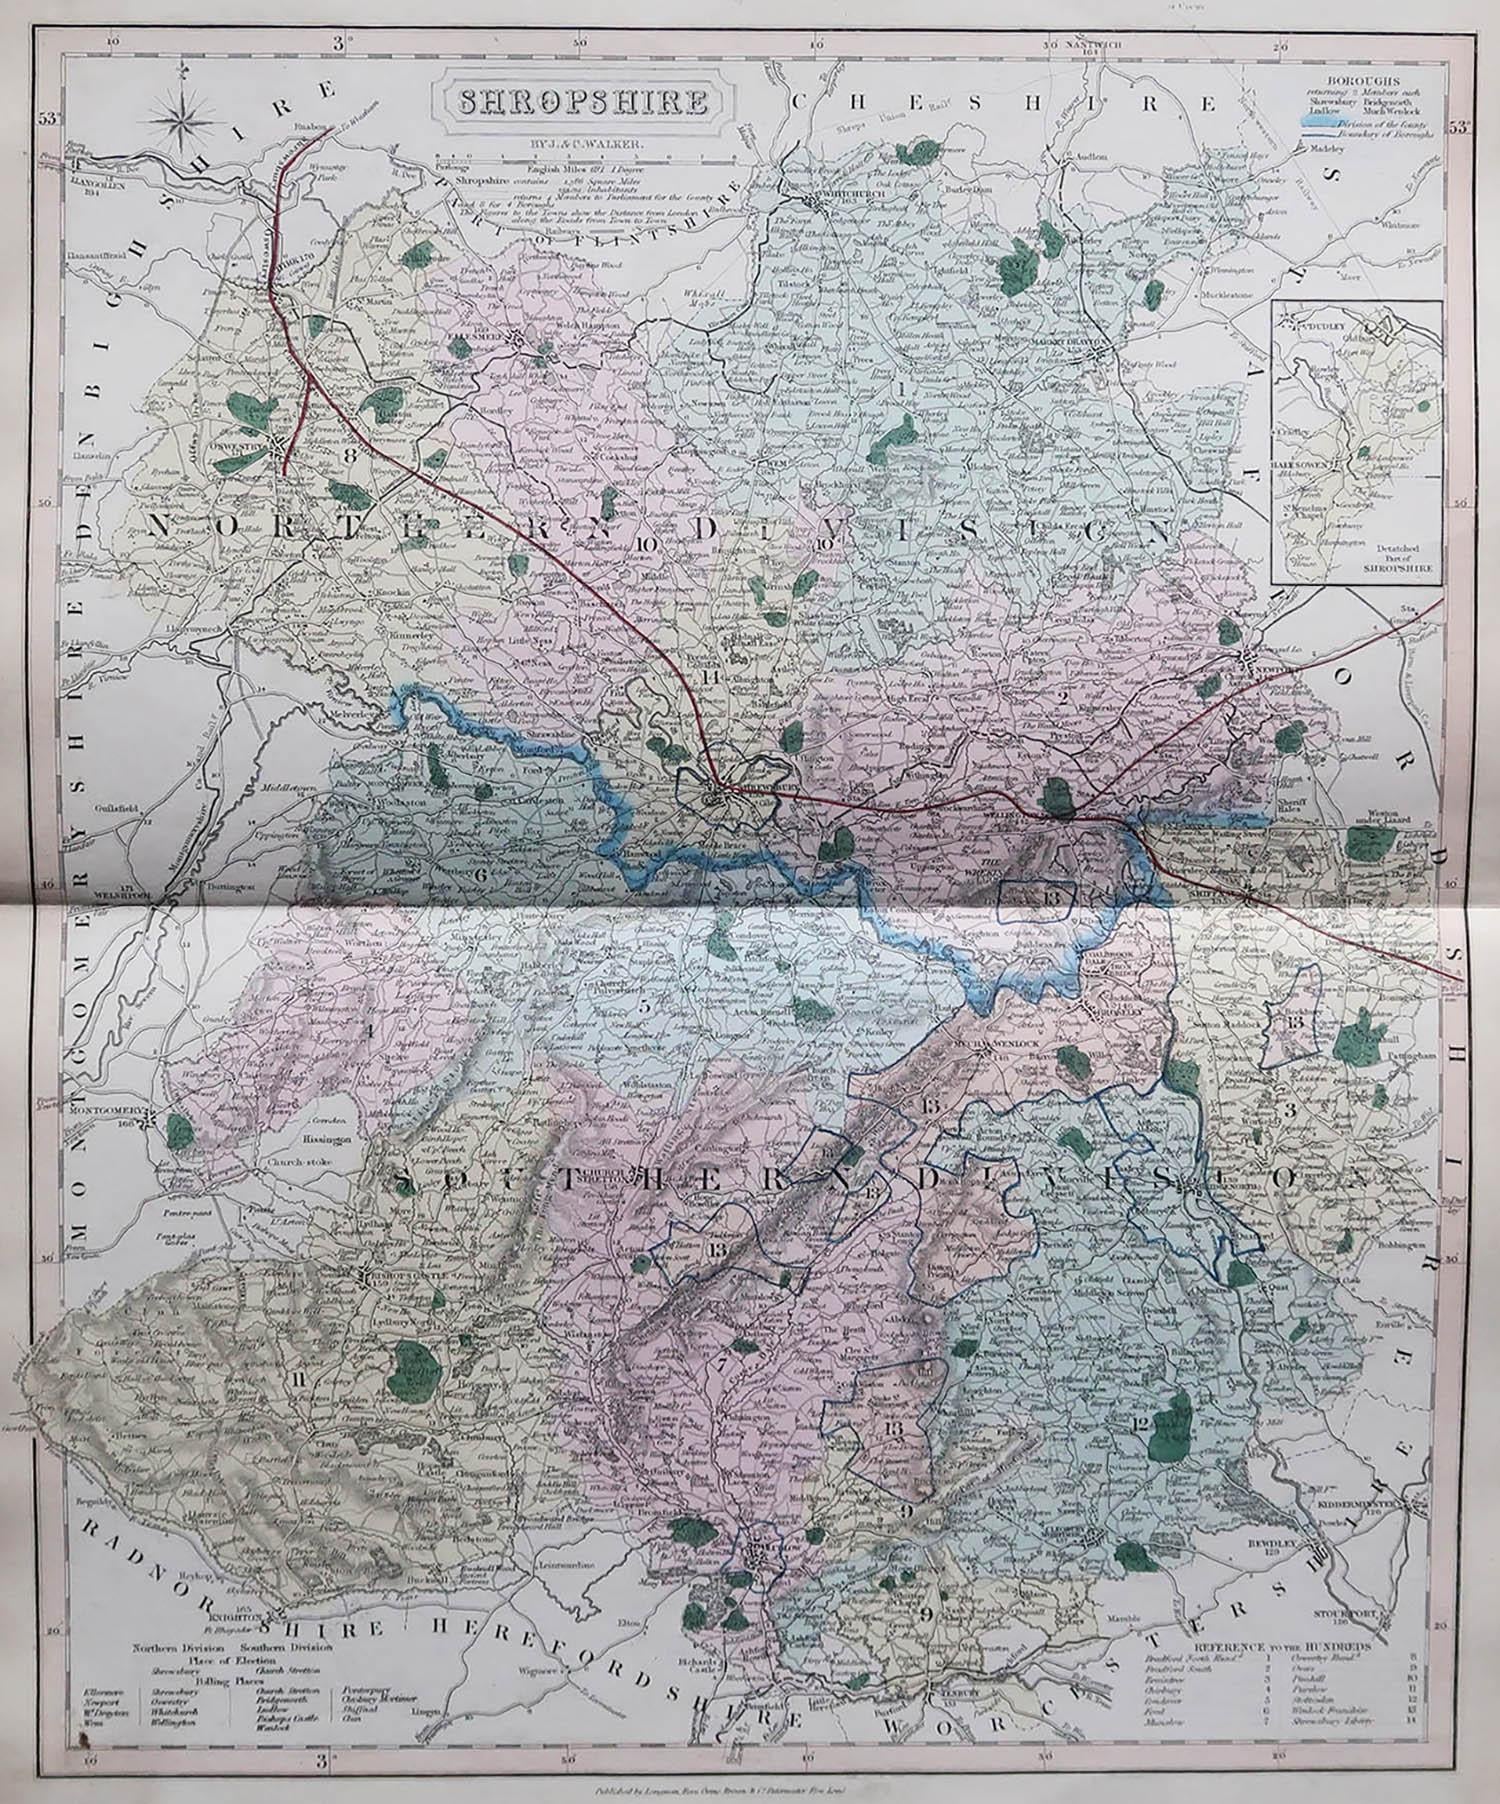 Großartige Karte von Shropshire

Original Farbe

Von J & C Walker

Veröffentlicht von Longman, Rees, Orme, Brown & Co. 1851

Ungerahmt.




